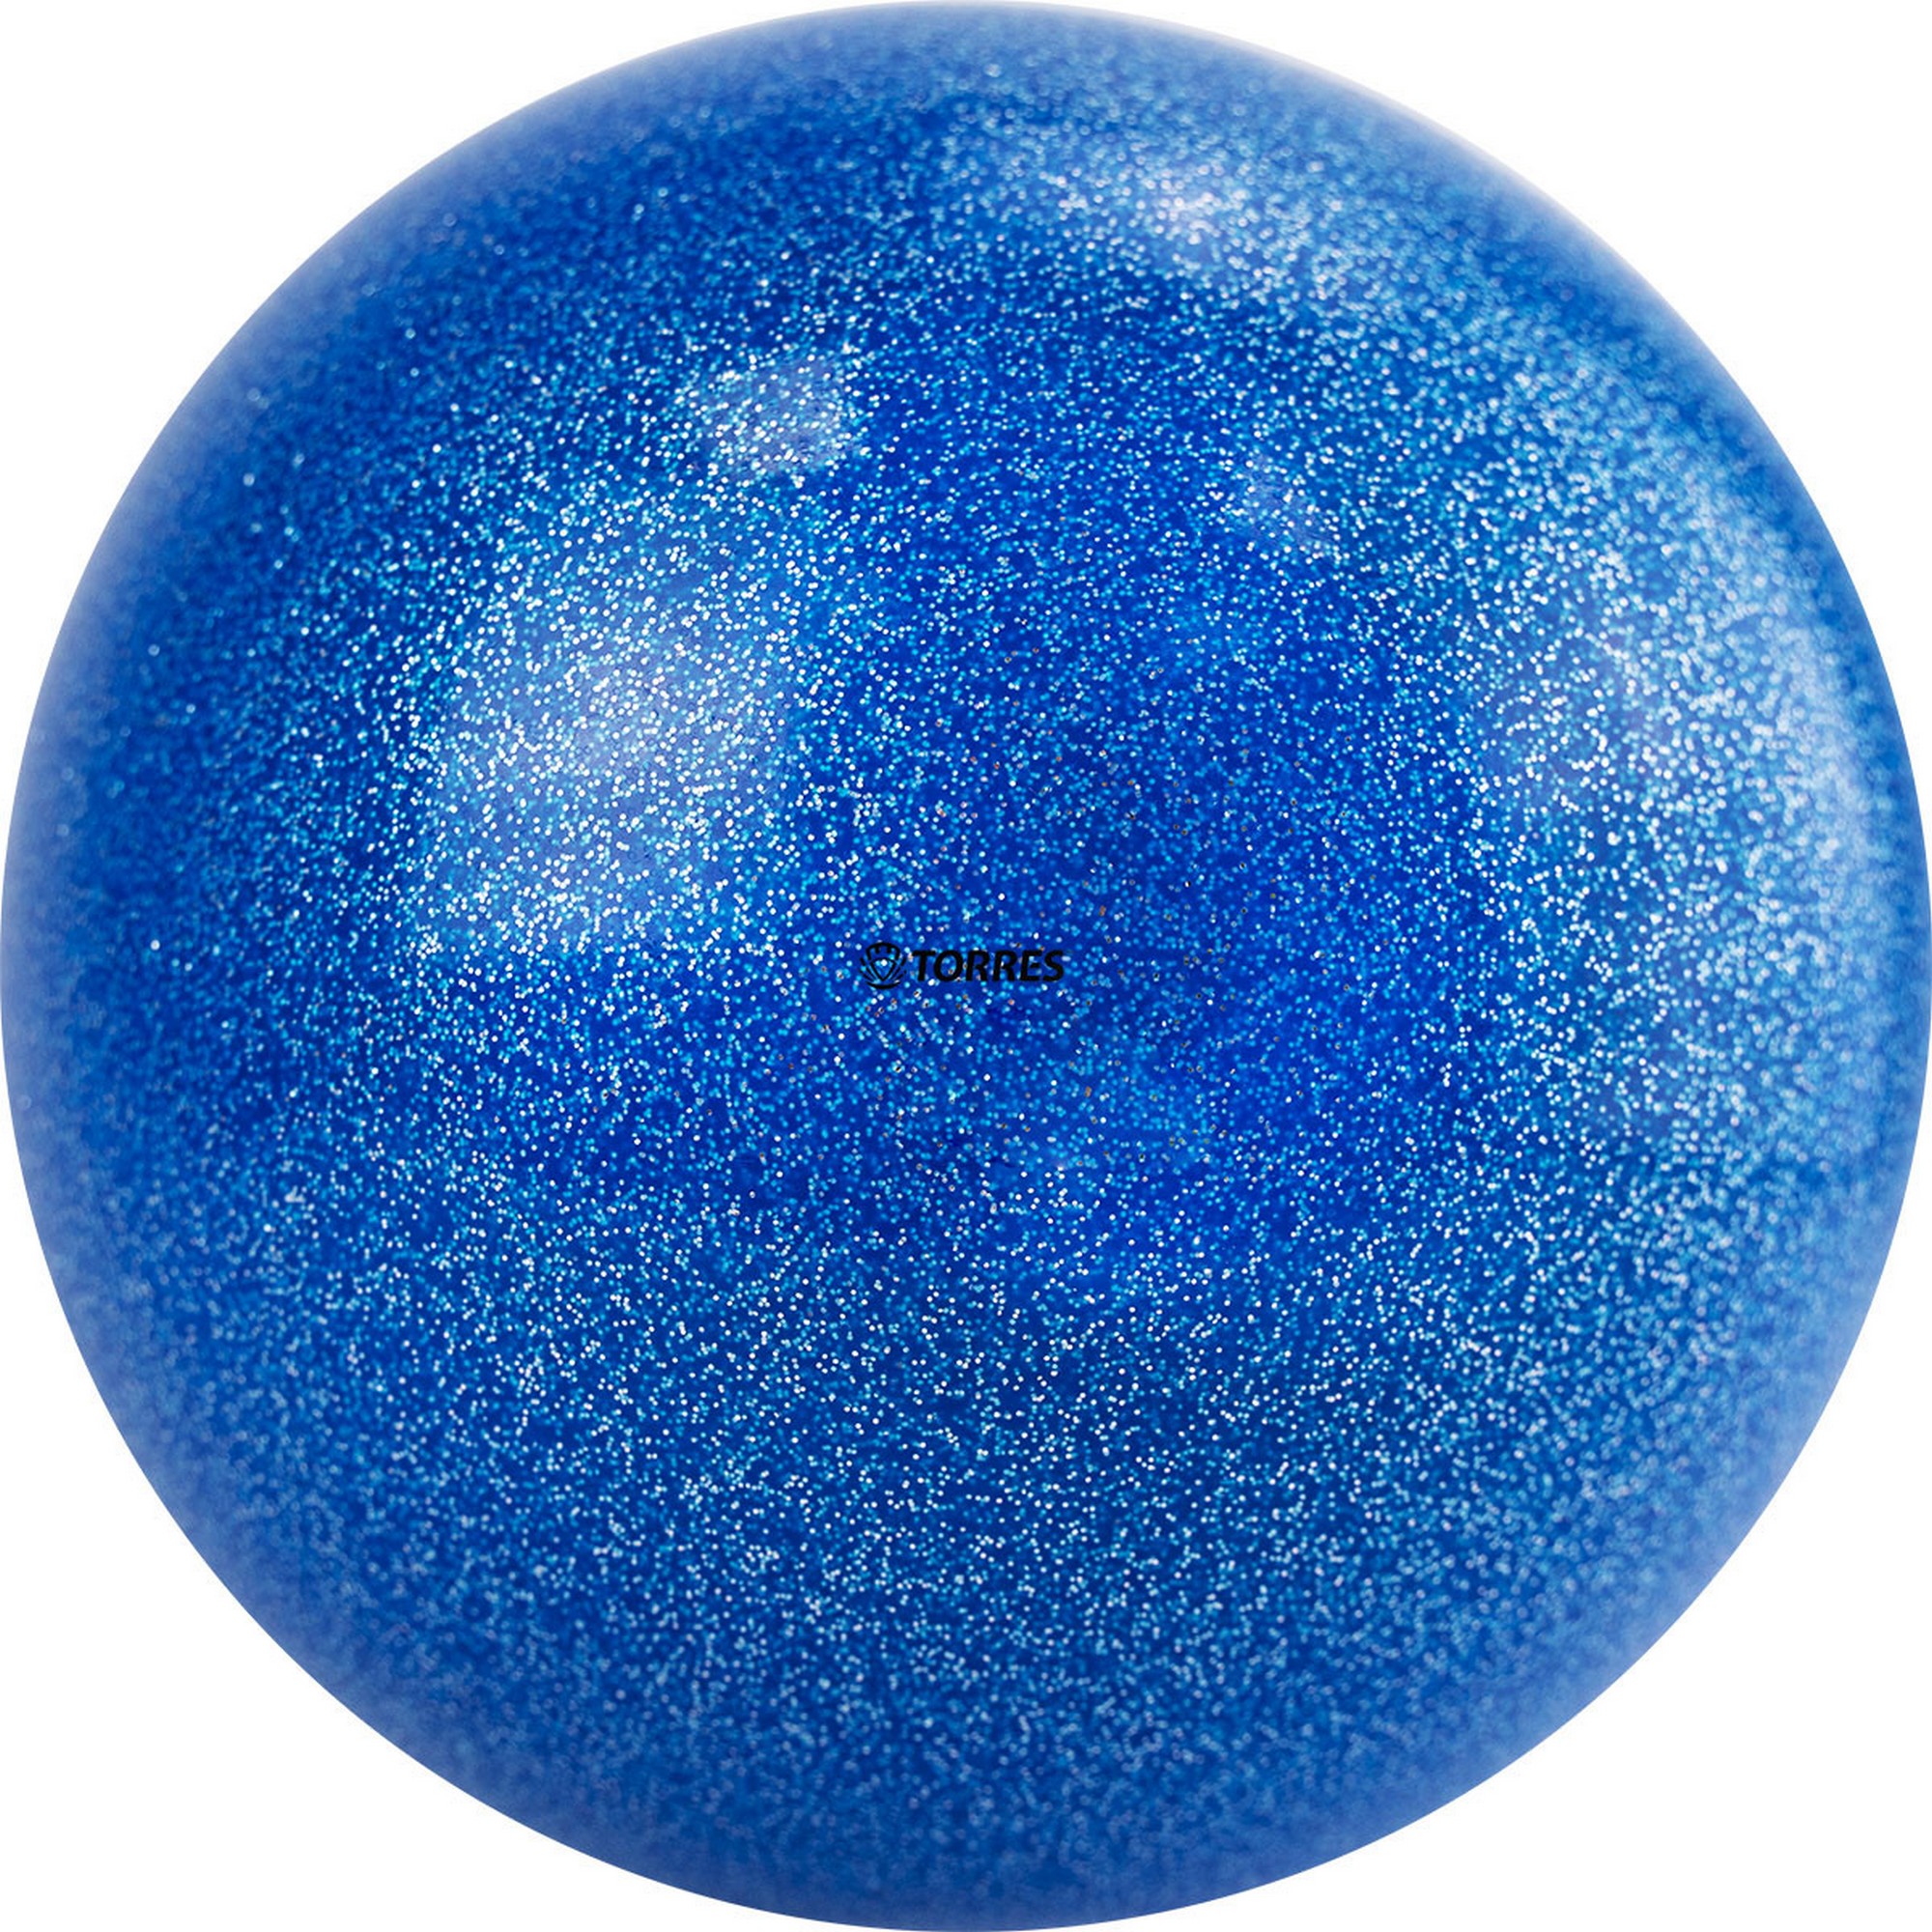 Мяч для художественной гимнастики d15см Torres ПВХ AGP-15-01 синий с блестками 2000_2000